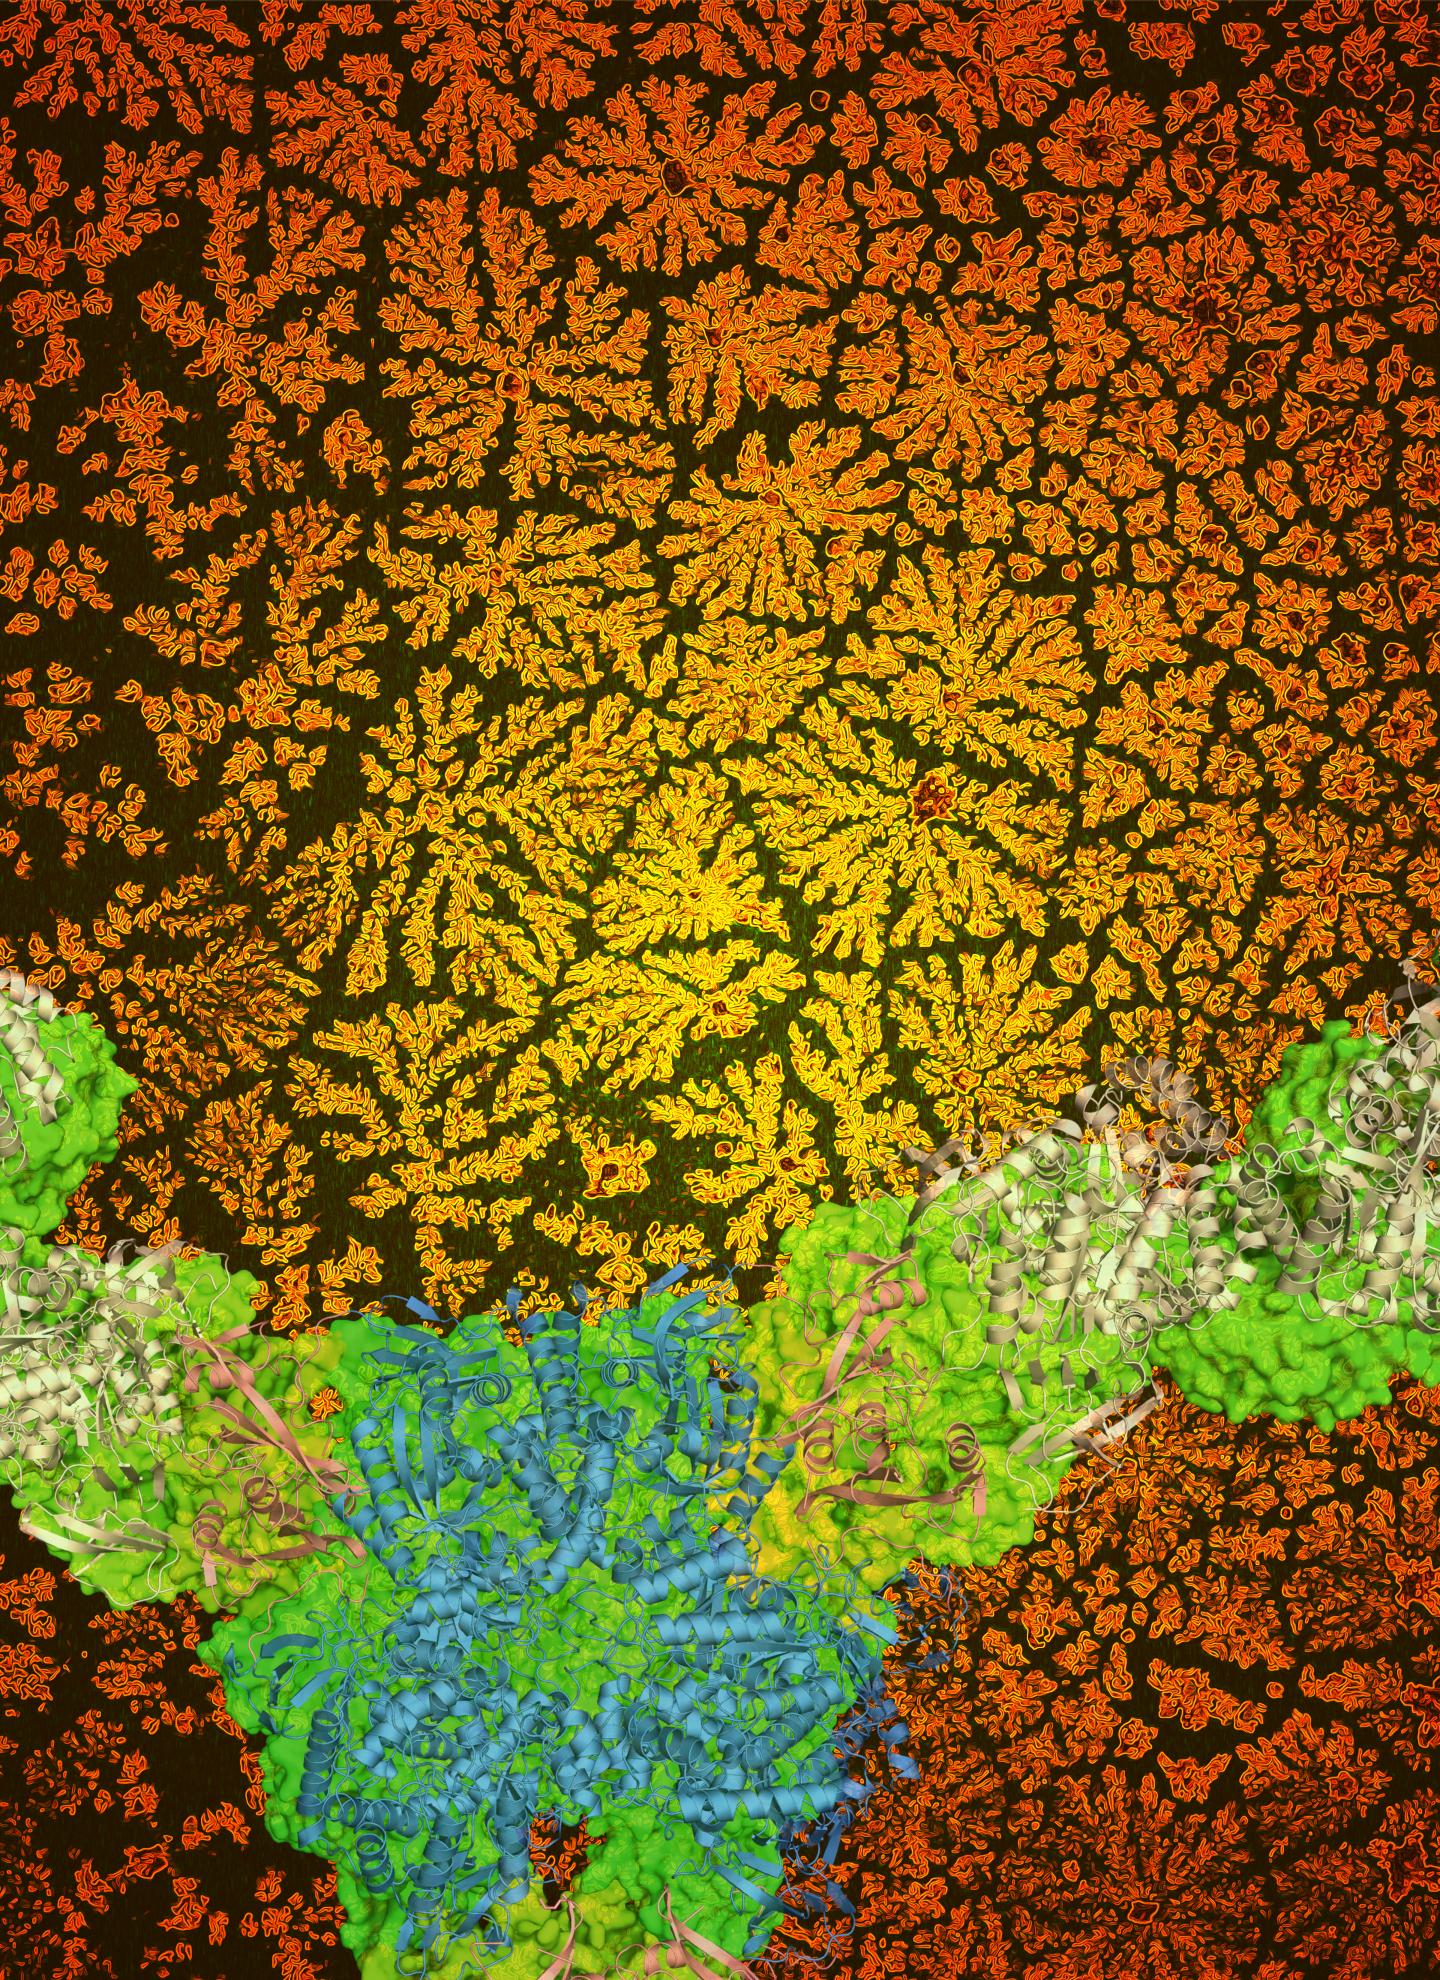 FlowerShaped Biomaterials [IMAGE] EurekAlert! Science News Releases